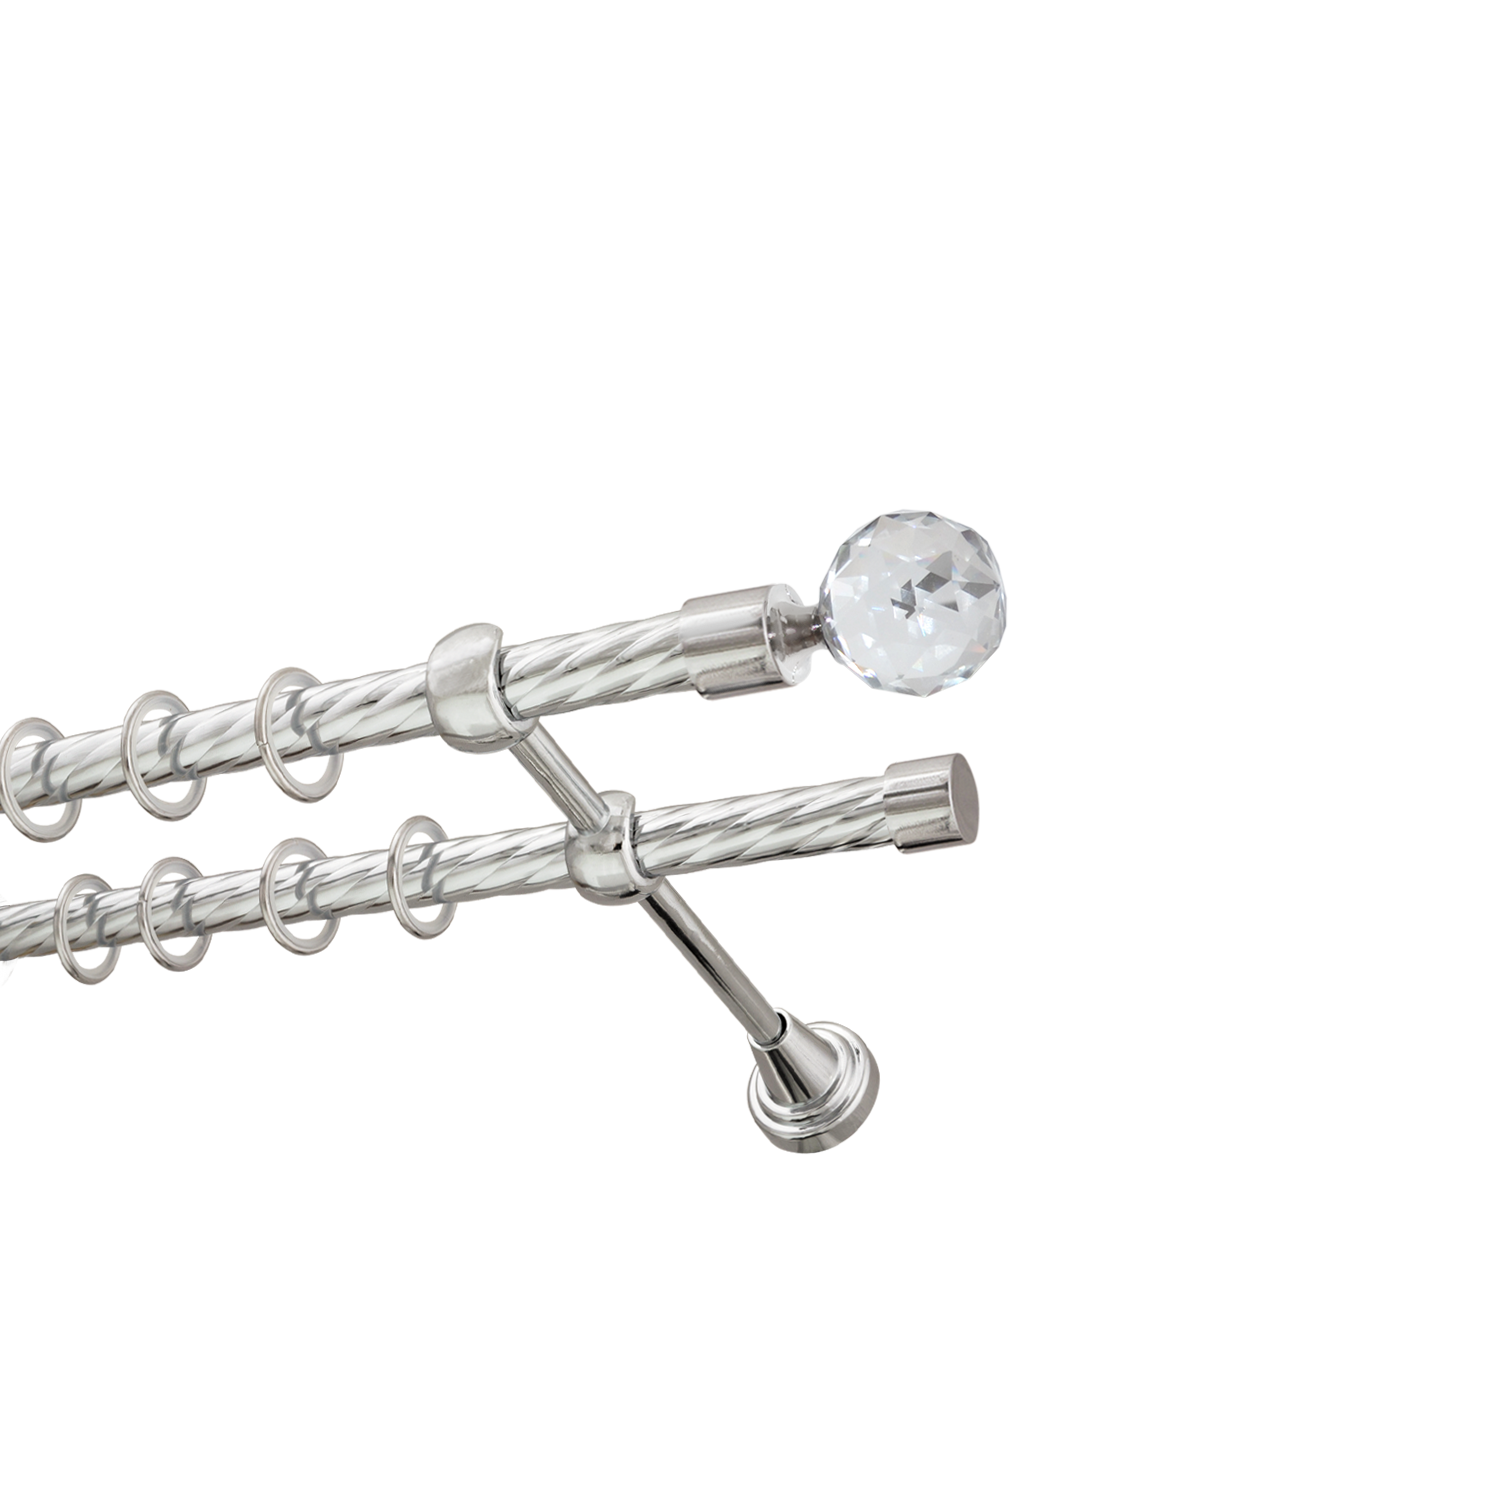 Металлический карниз для штор Карат, двухрядный 16/16 мм, серебро, витая штанга, длина 200 см